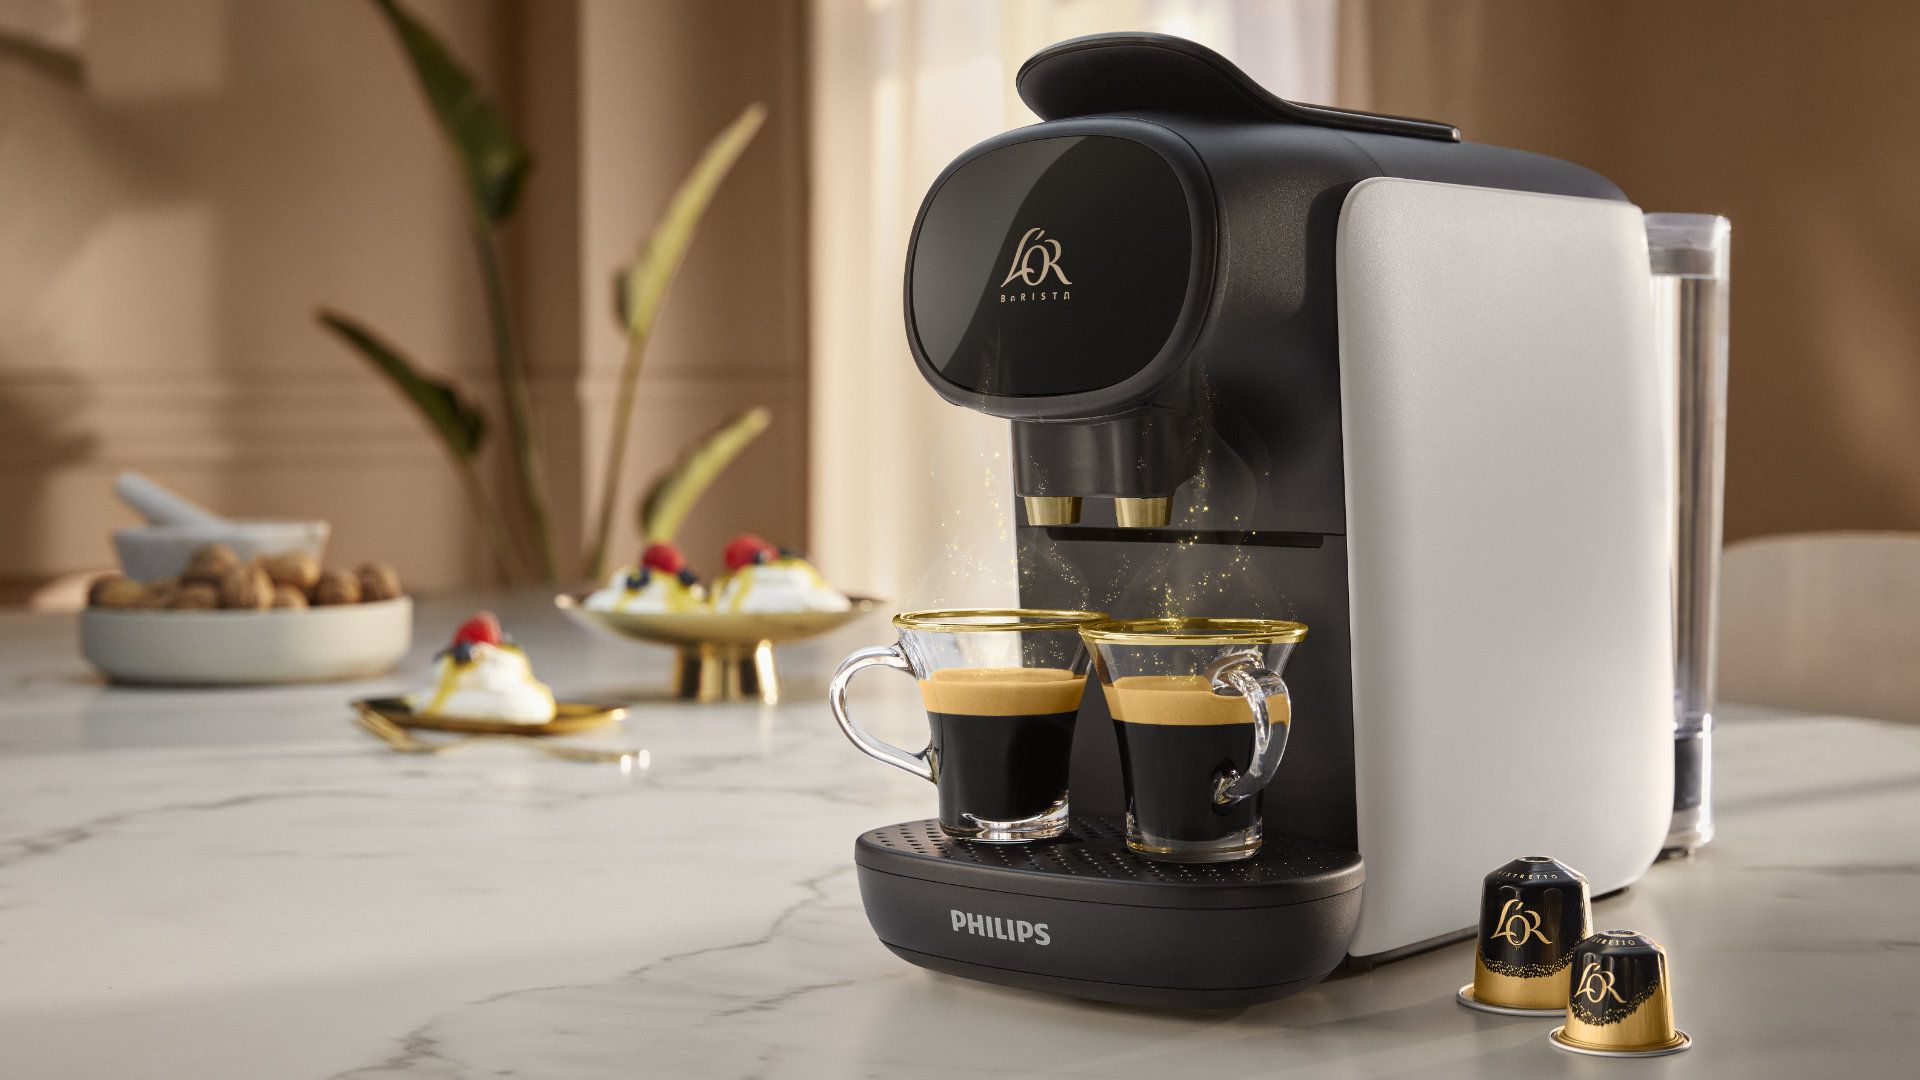 Quelle machine à café choisir ? Cafetière filtre, dosettes, expresso